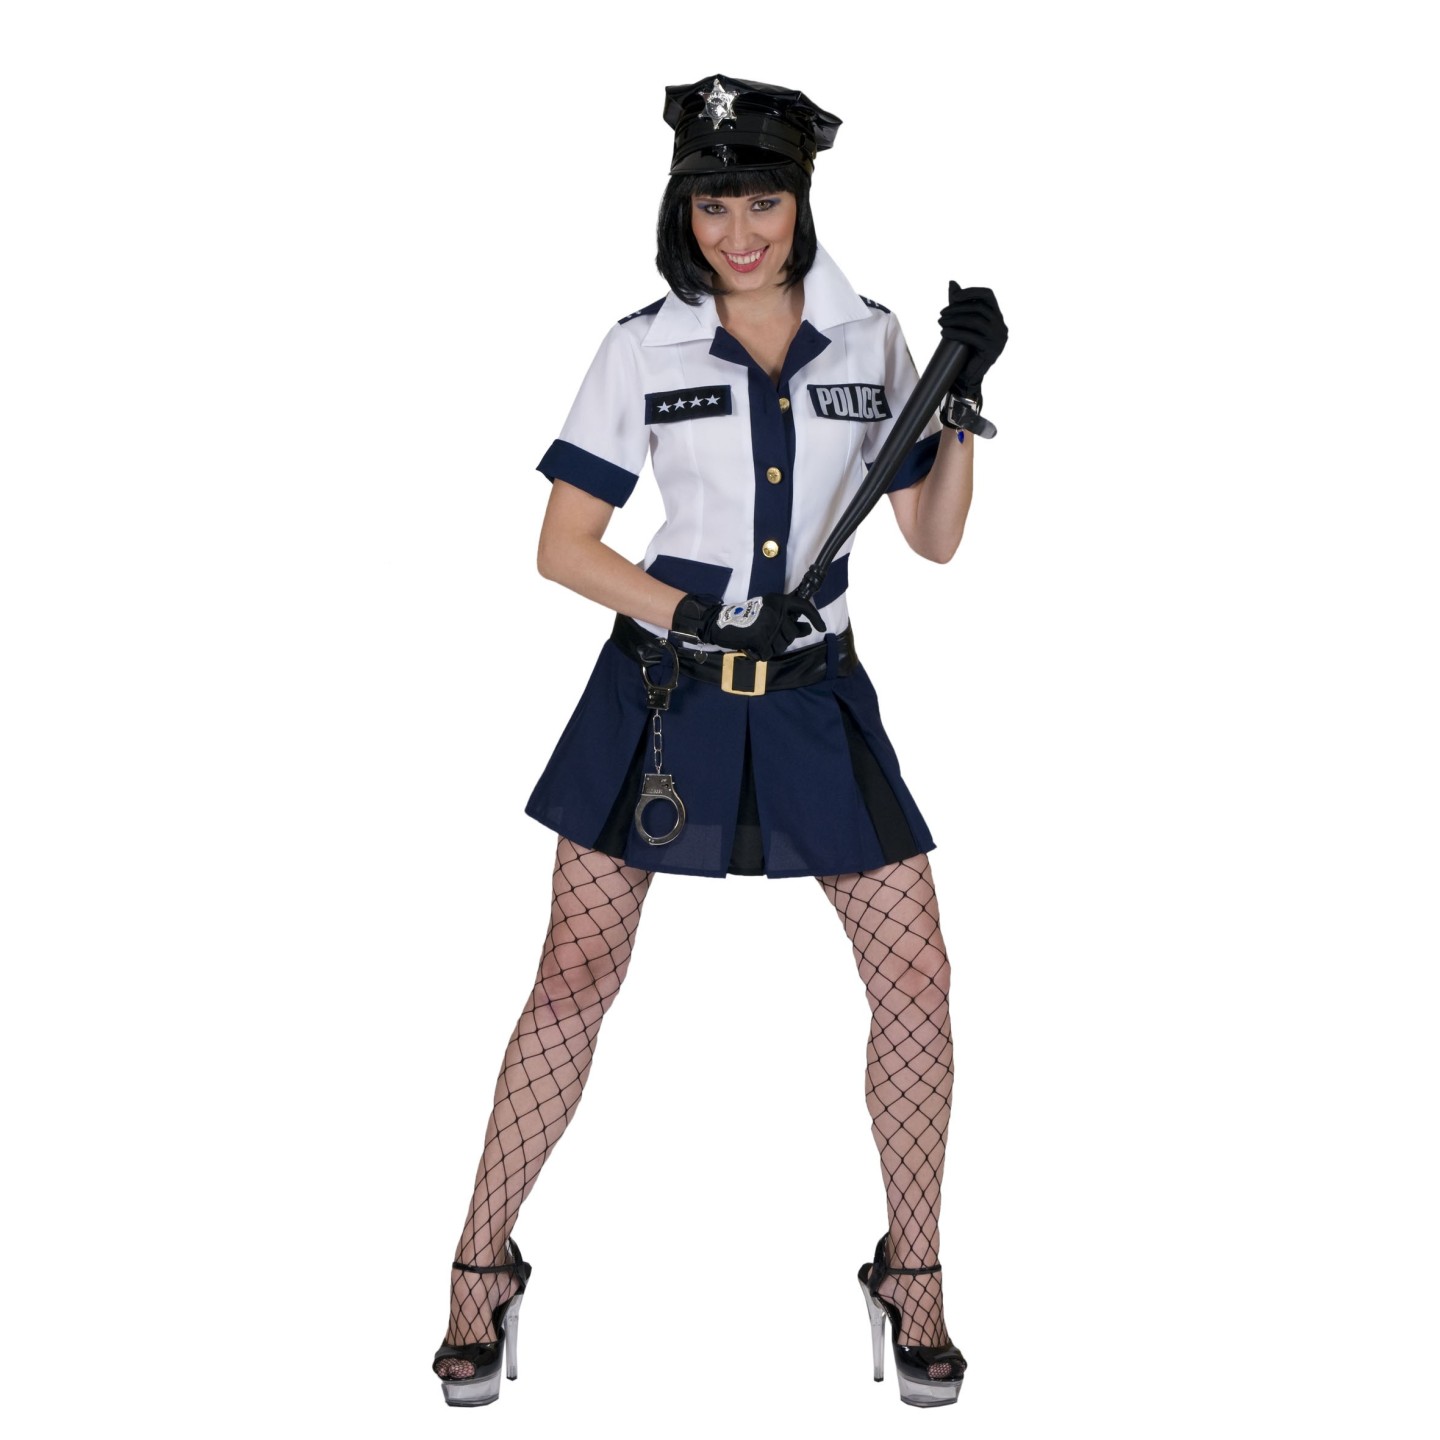 Nucleair Verhogen leerboek Politie jurkje dames | Jokershop.be - Carnaval kostuums